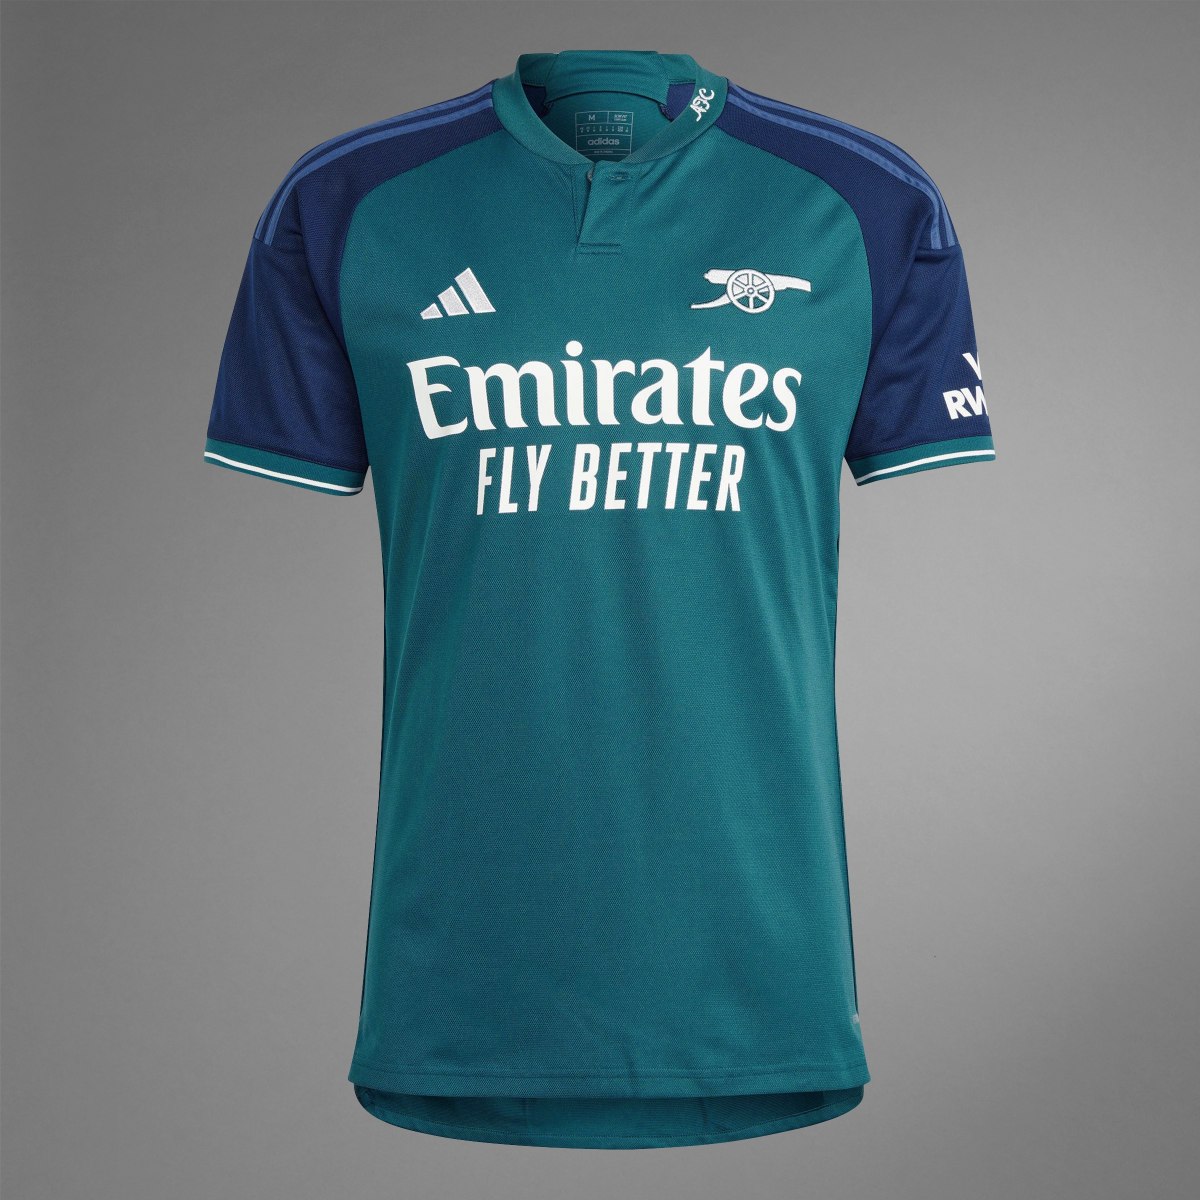 Adidas Jersey Tercer Uniforme Arsenal 23/24. 10